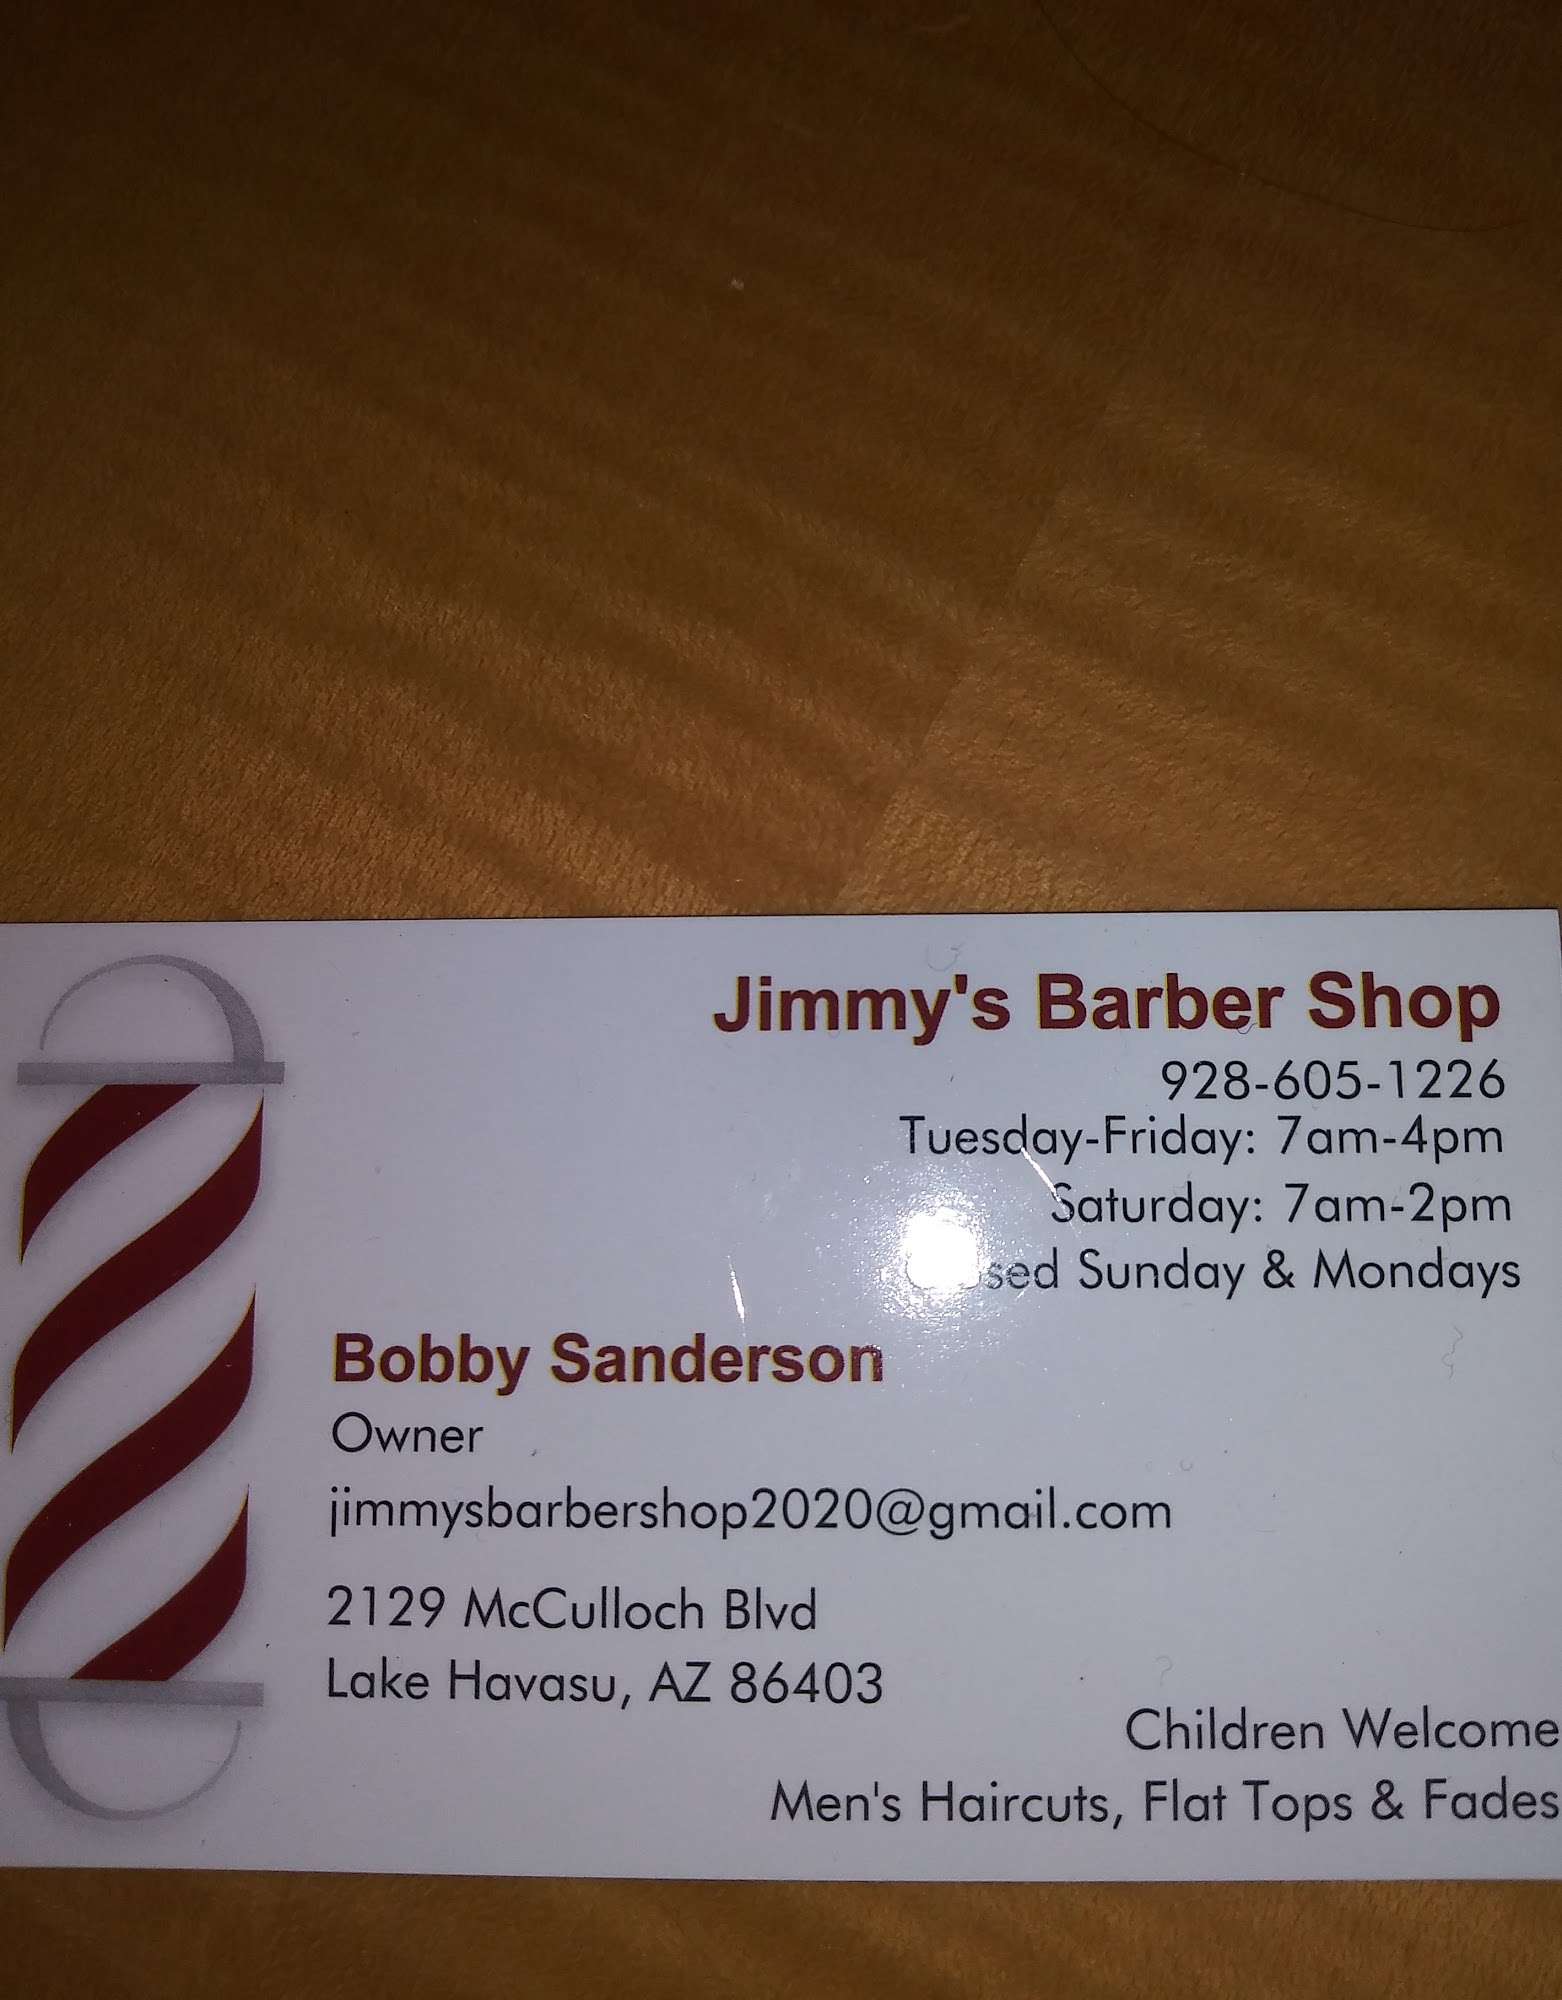 Jimmy’s Barber Shop